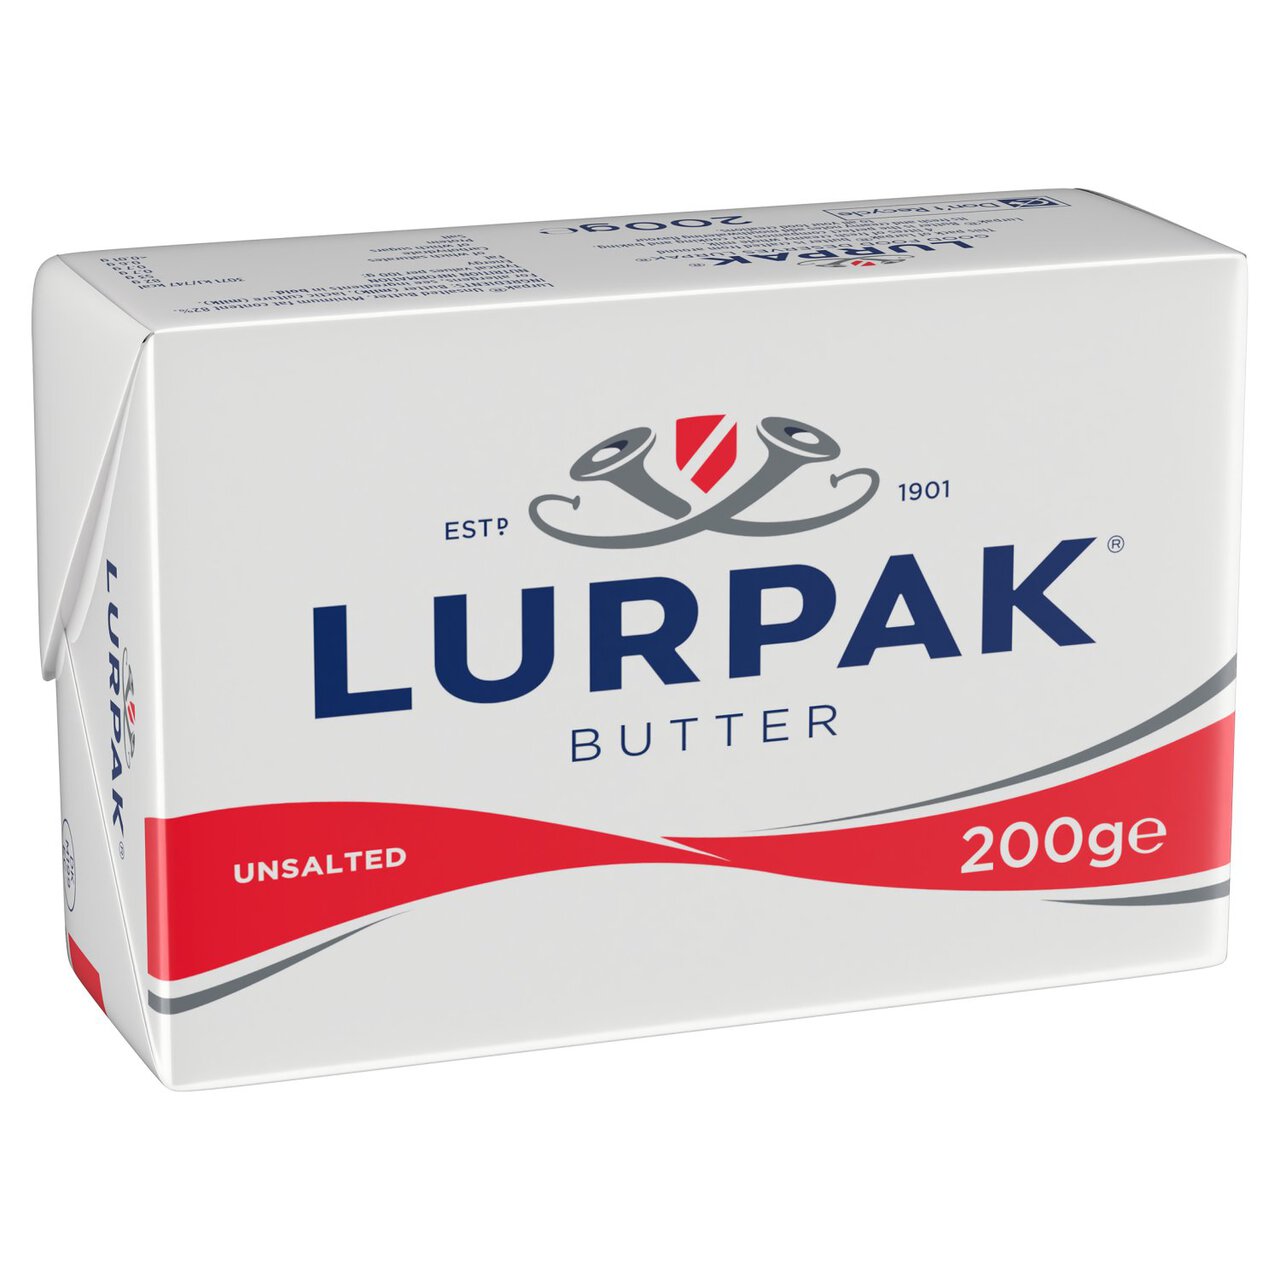 Lurpak Unsalted Butter 200g